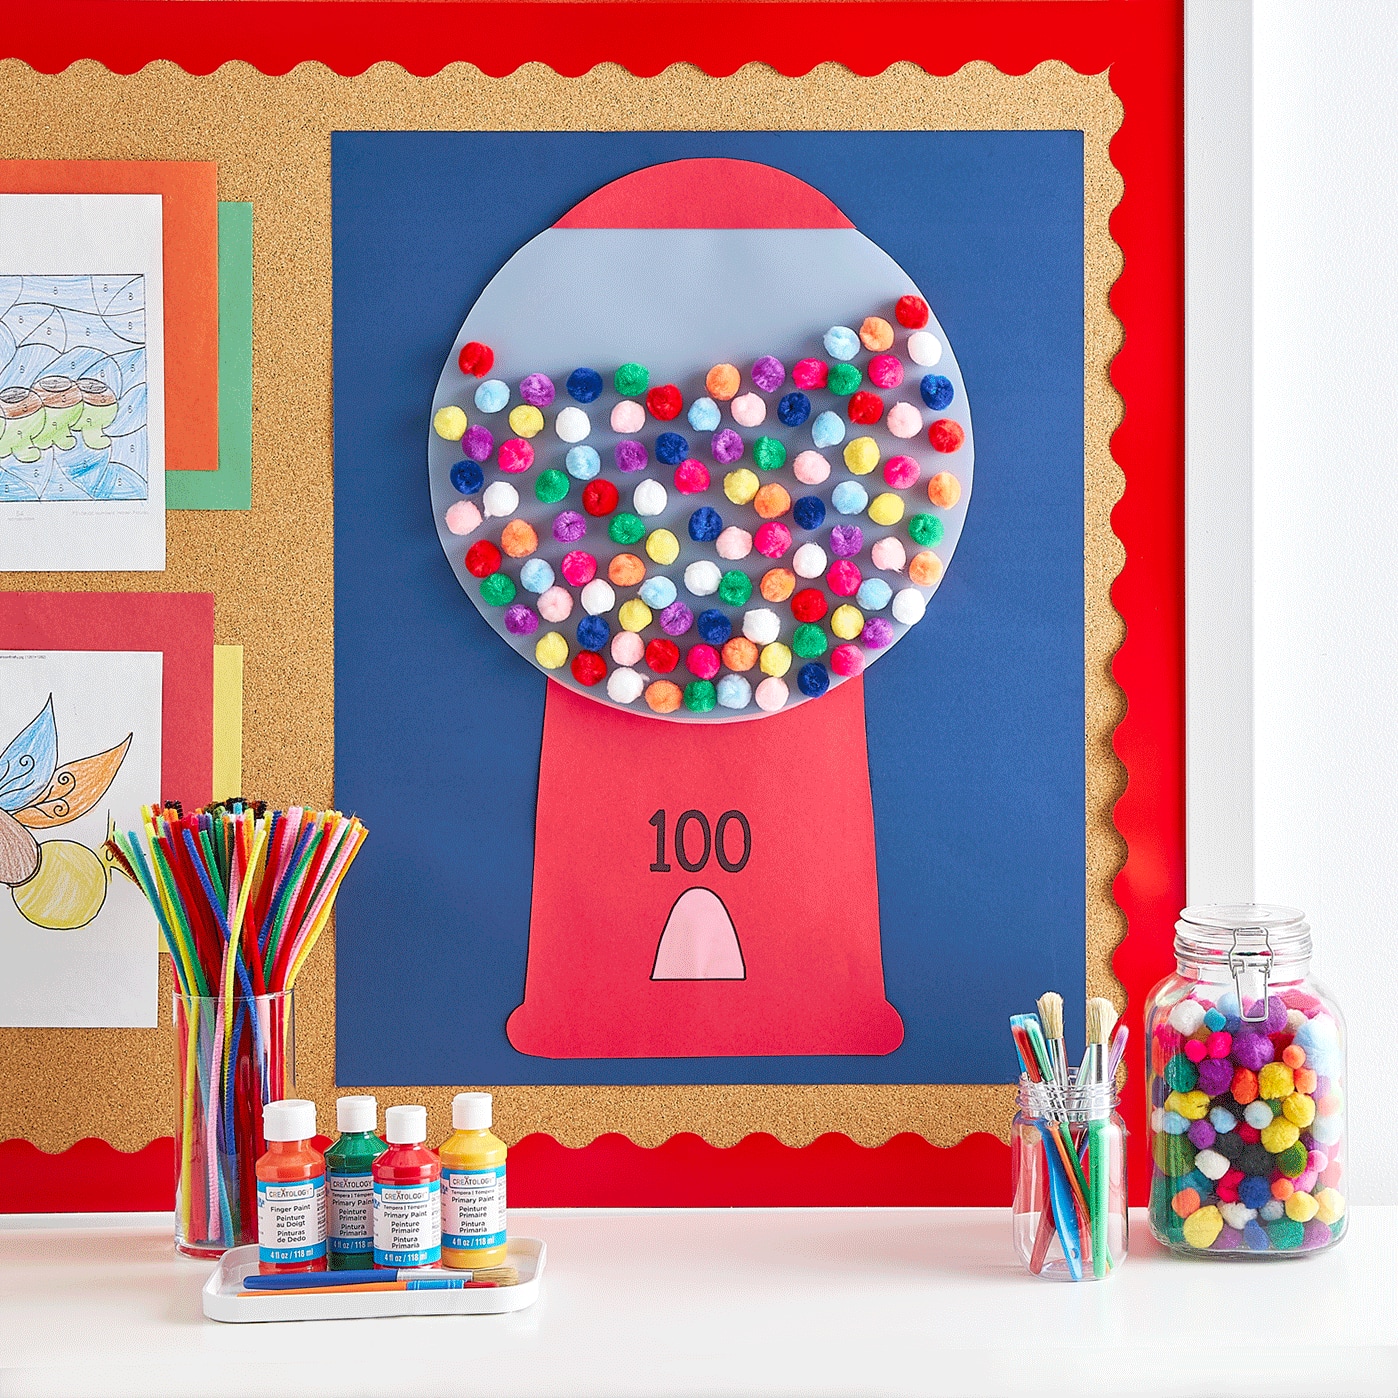 100-days-of-school-gumball-machine-poster